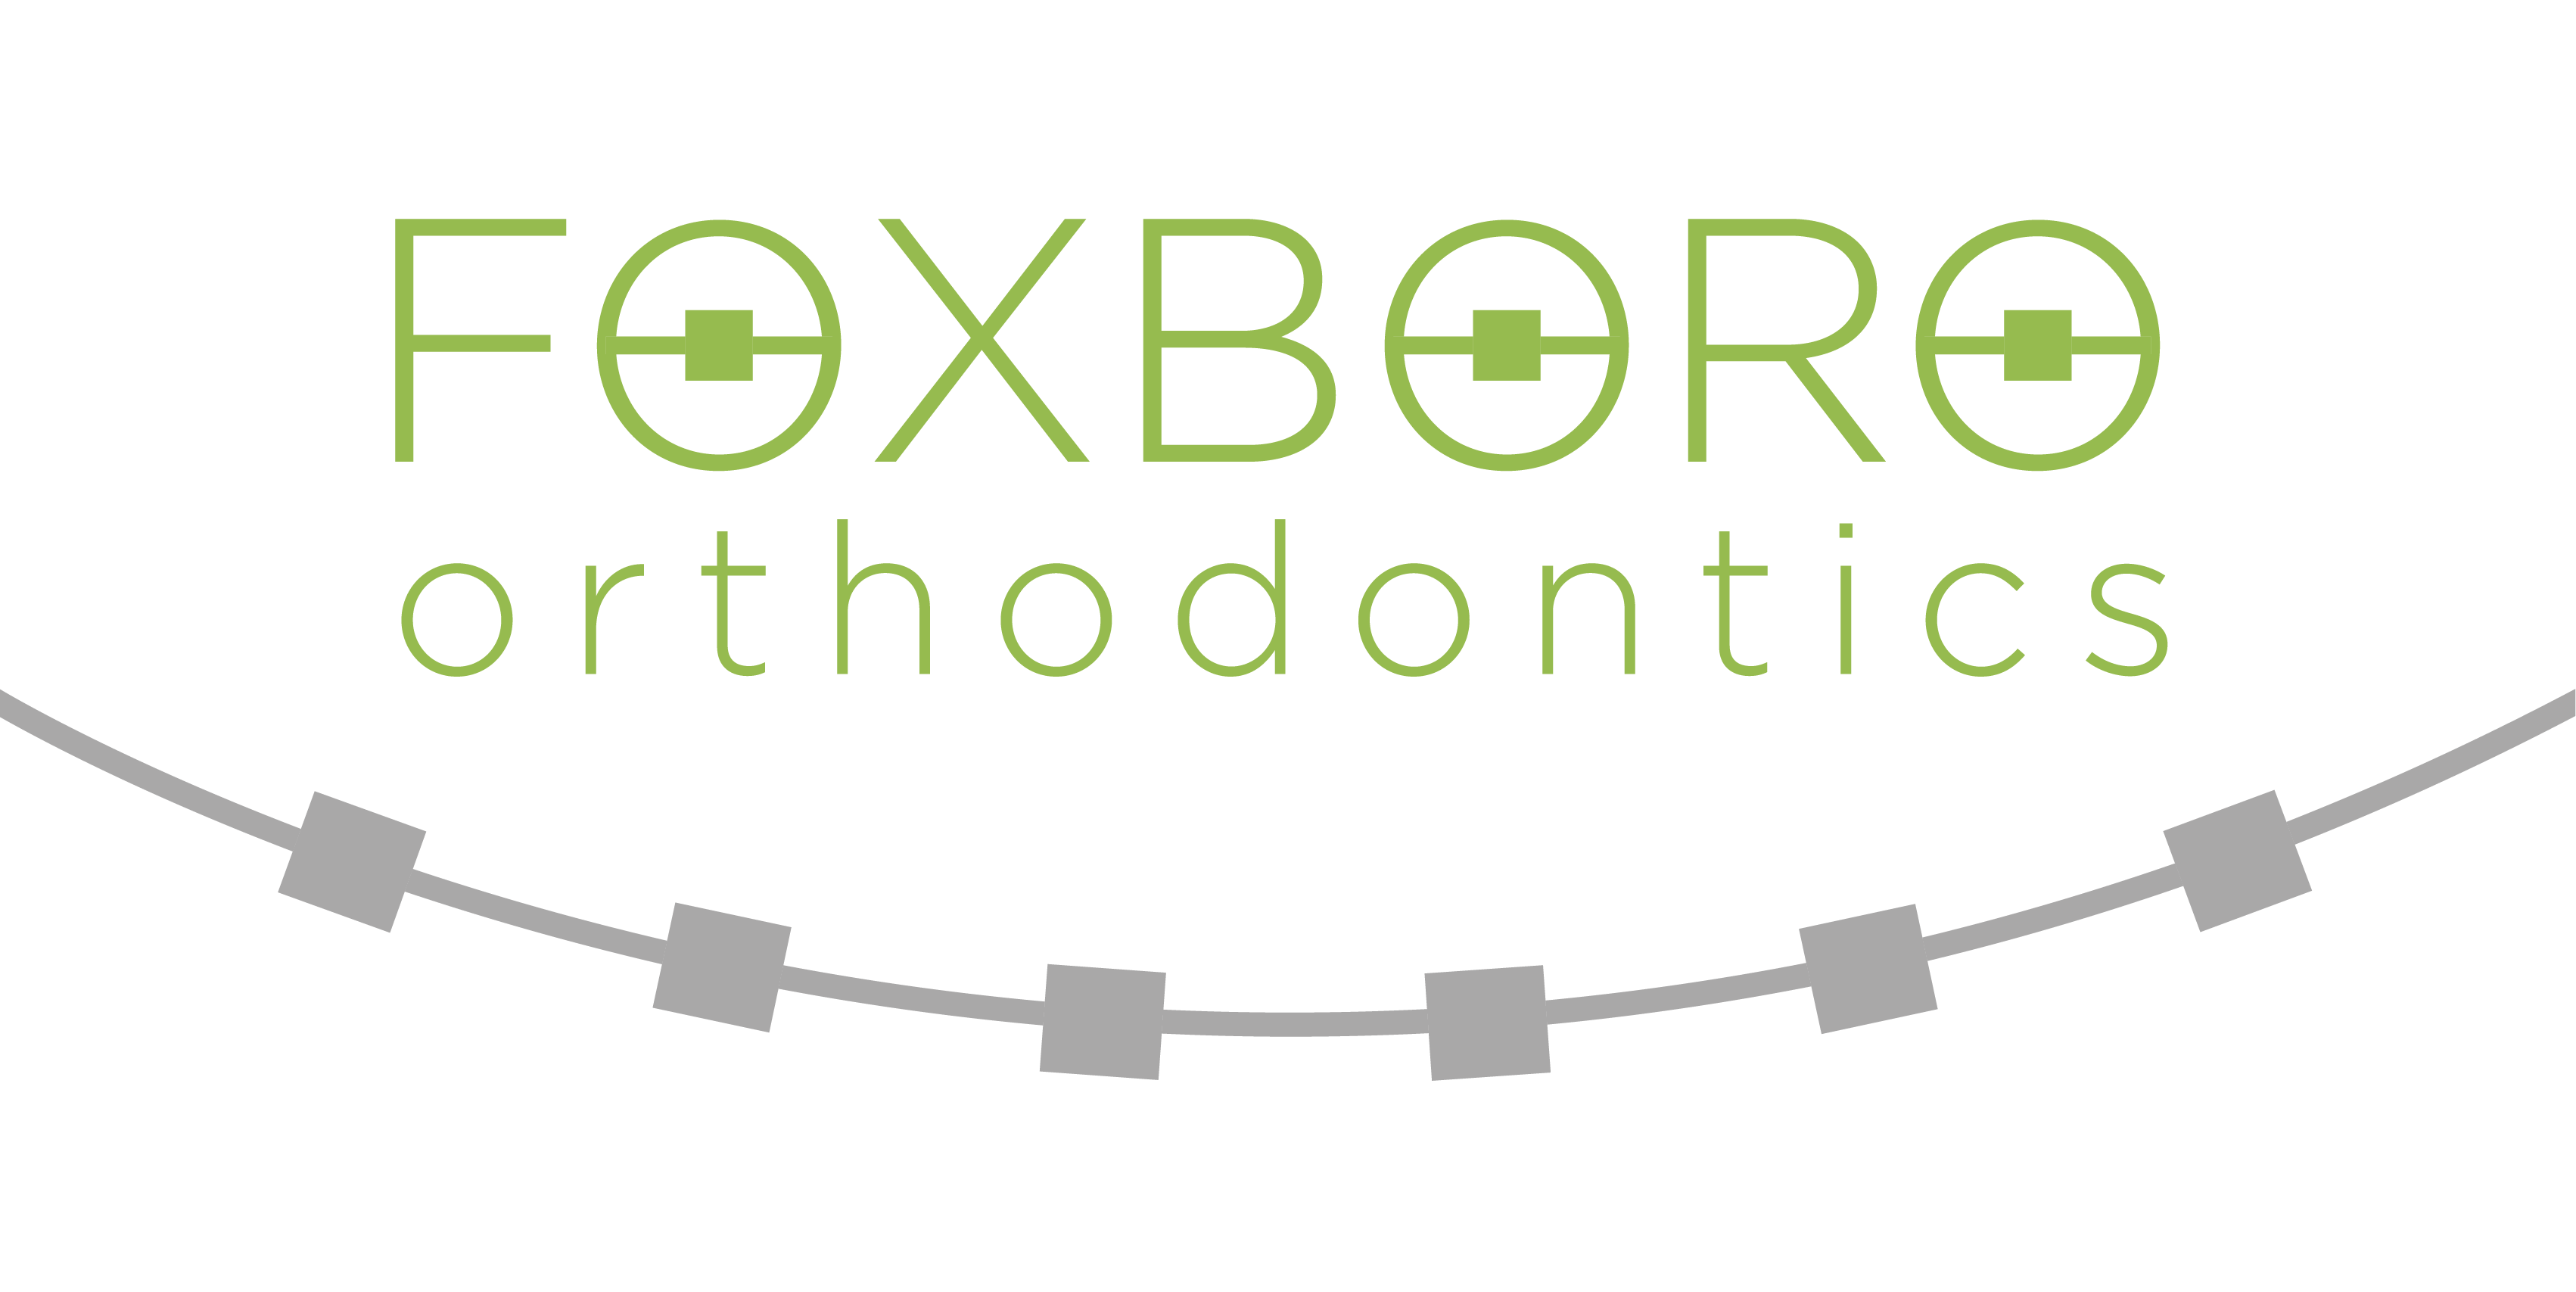 Foxboro Orthodontics